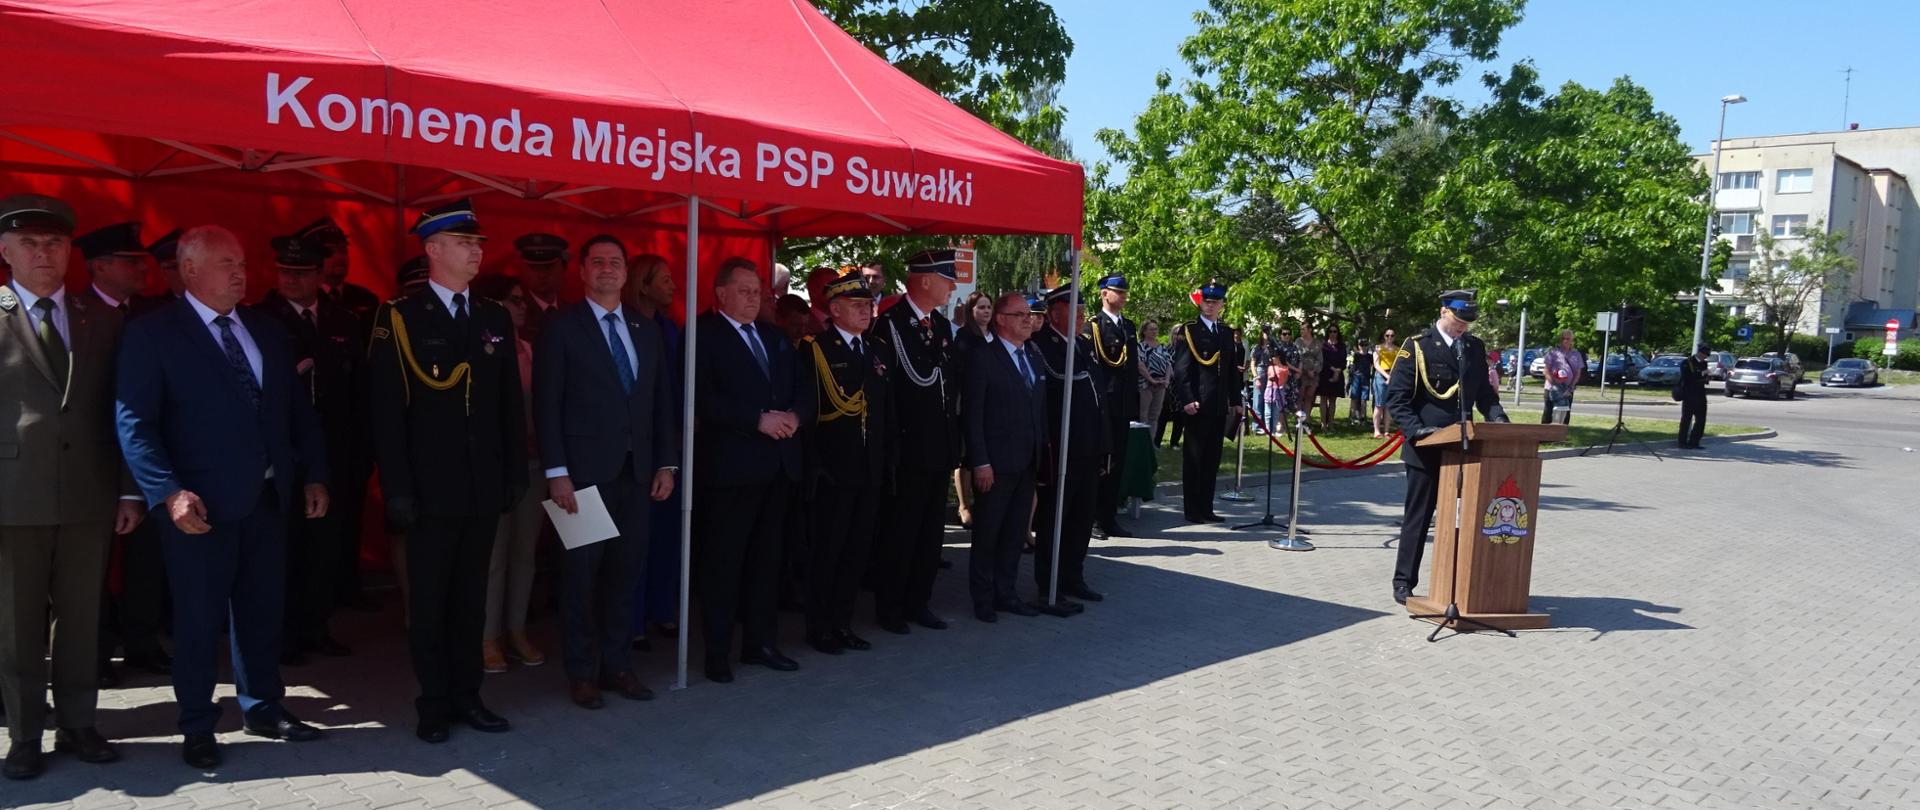 Powiatowe Obchody Dnia Strażaka oraz powołanie na stanowisko Komendanta Miejskiego Państwowej Straży Pożarnej w Suwałkach - czas przemówień